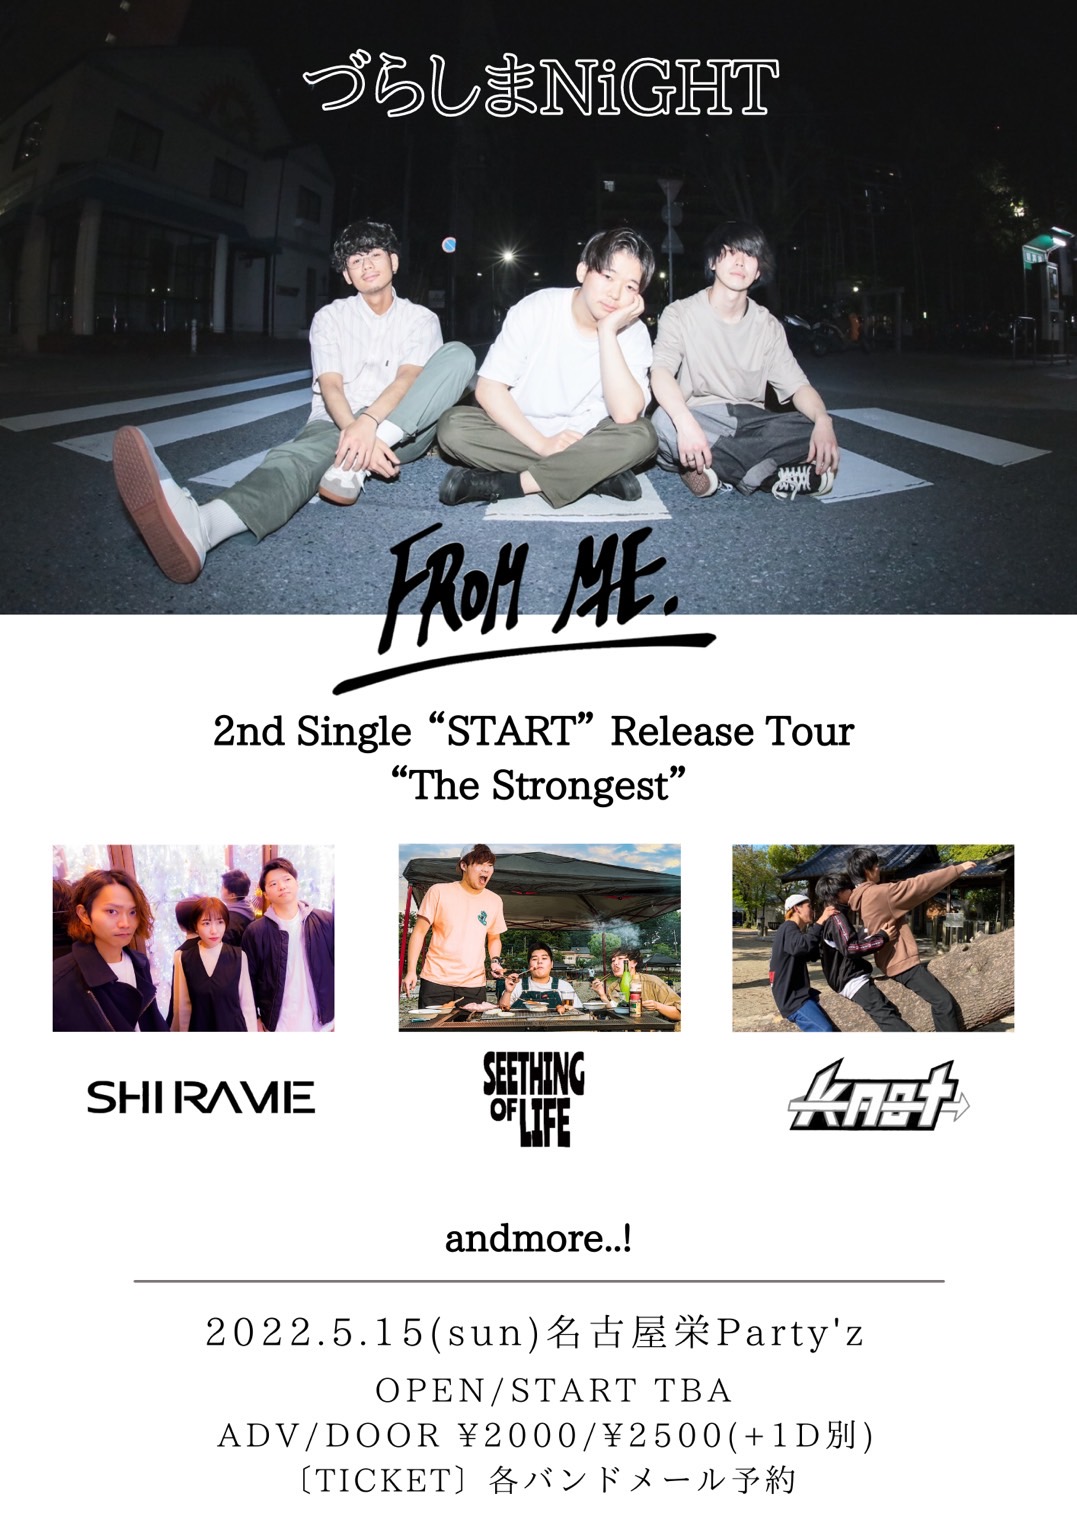 "づらしまNiGHT"FROM ME. 2nd Single “START” Release Tour “The Strongest”